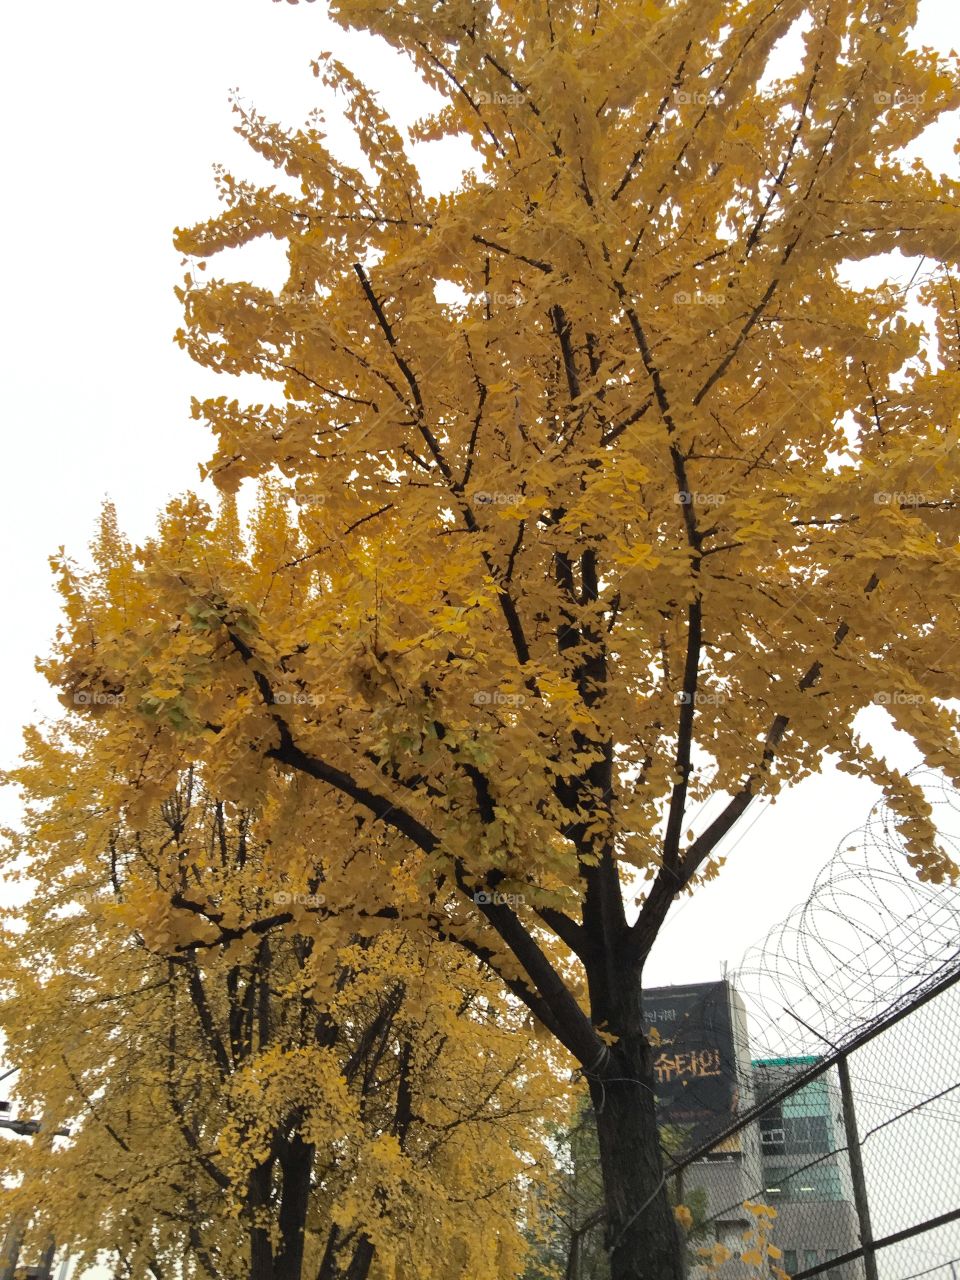 Fall 